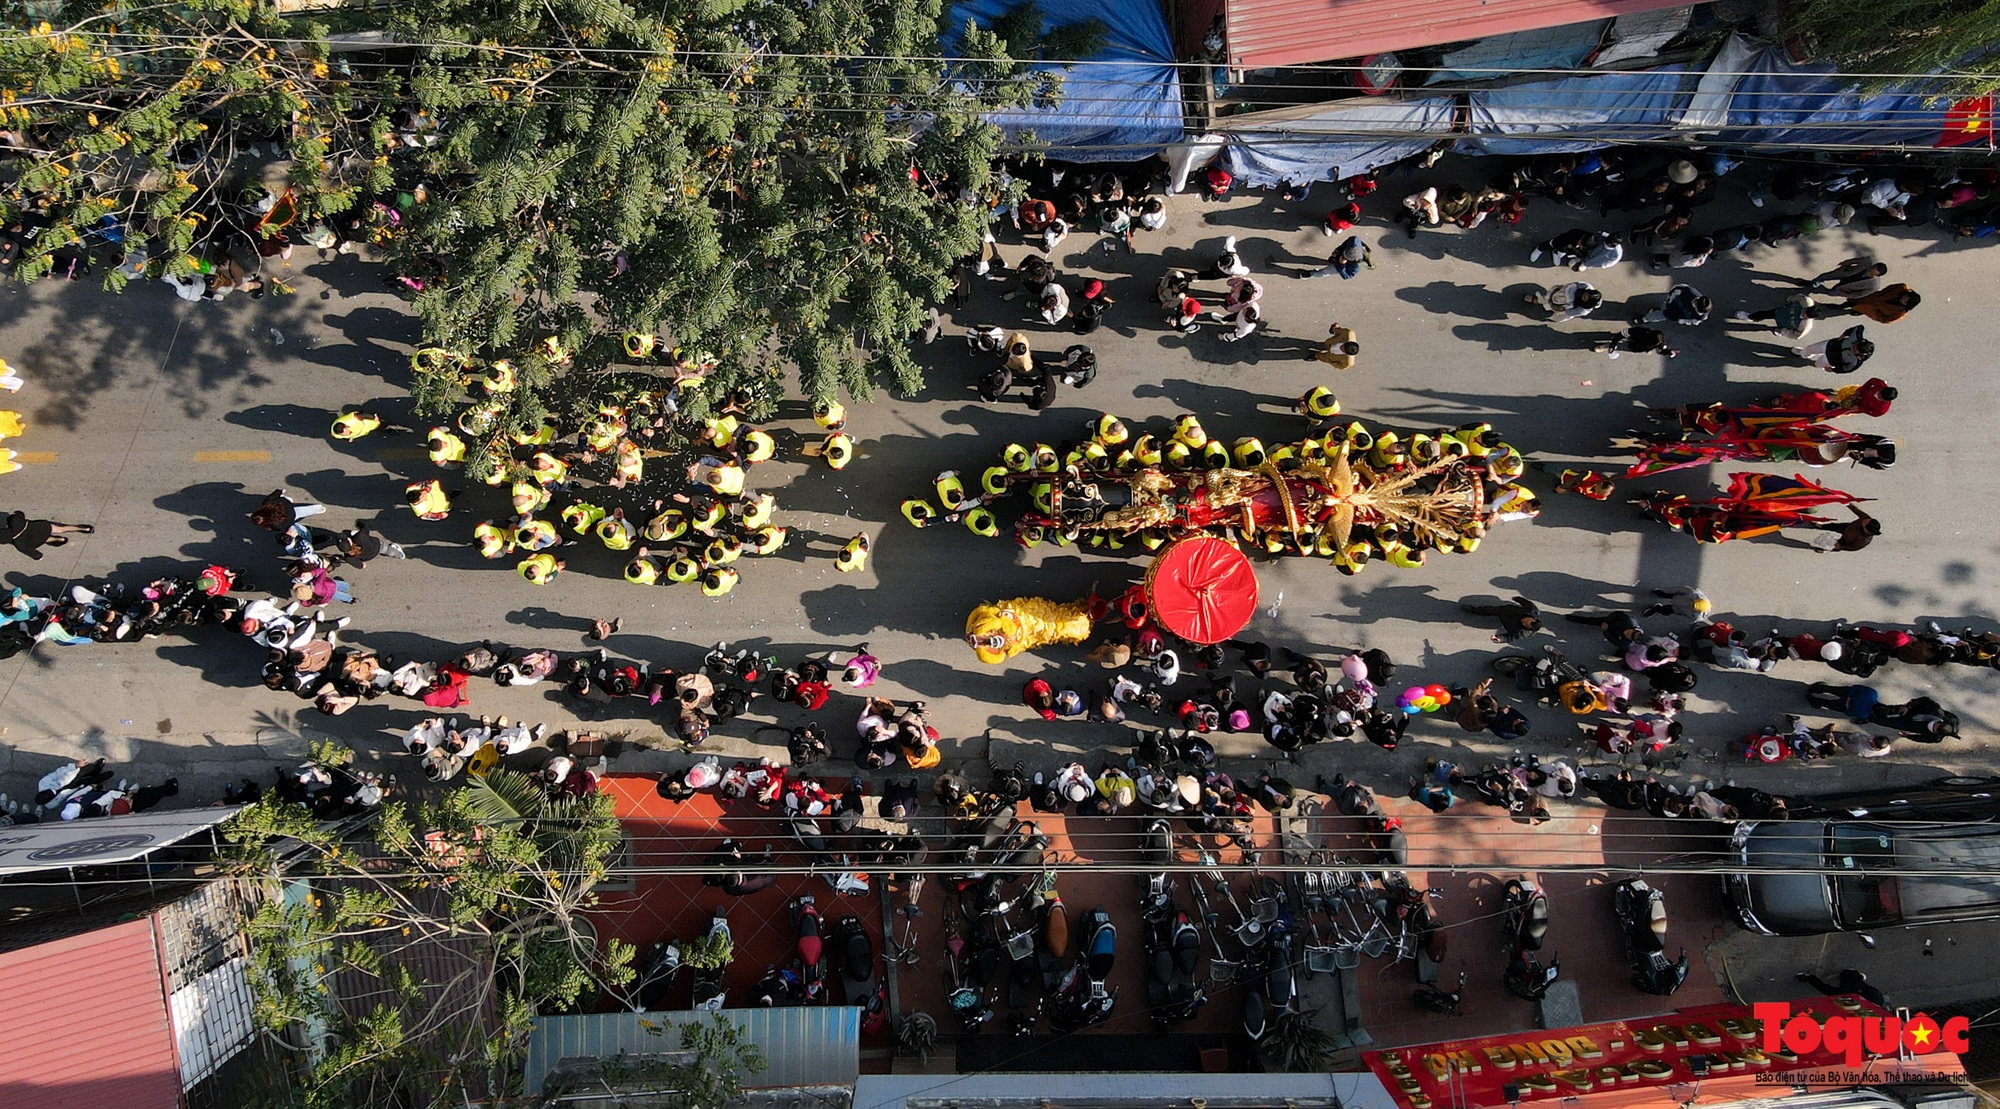 Tưng bừng, rộn ràng lễ hội rước pháo khổng lồ ở làng Đồng Kỵ - Ảnh 10.